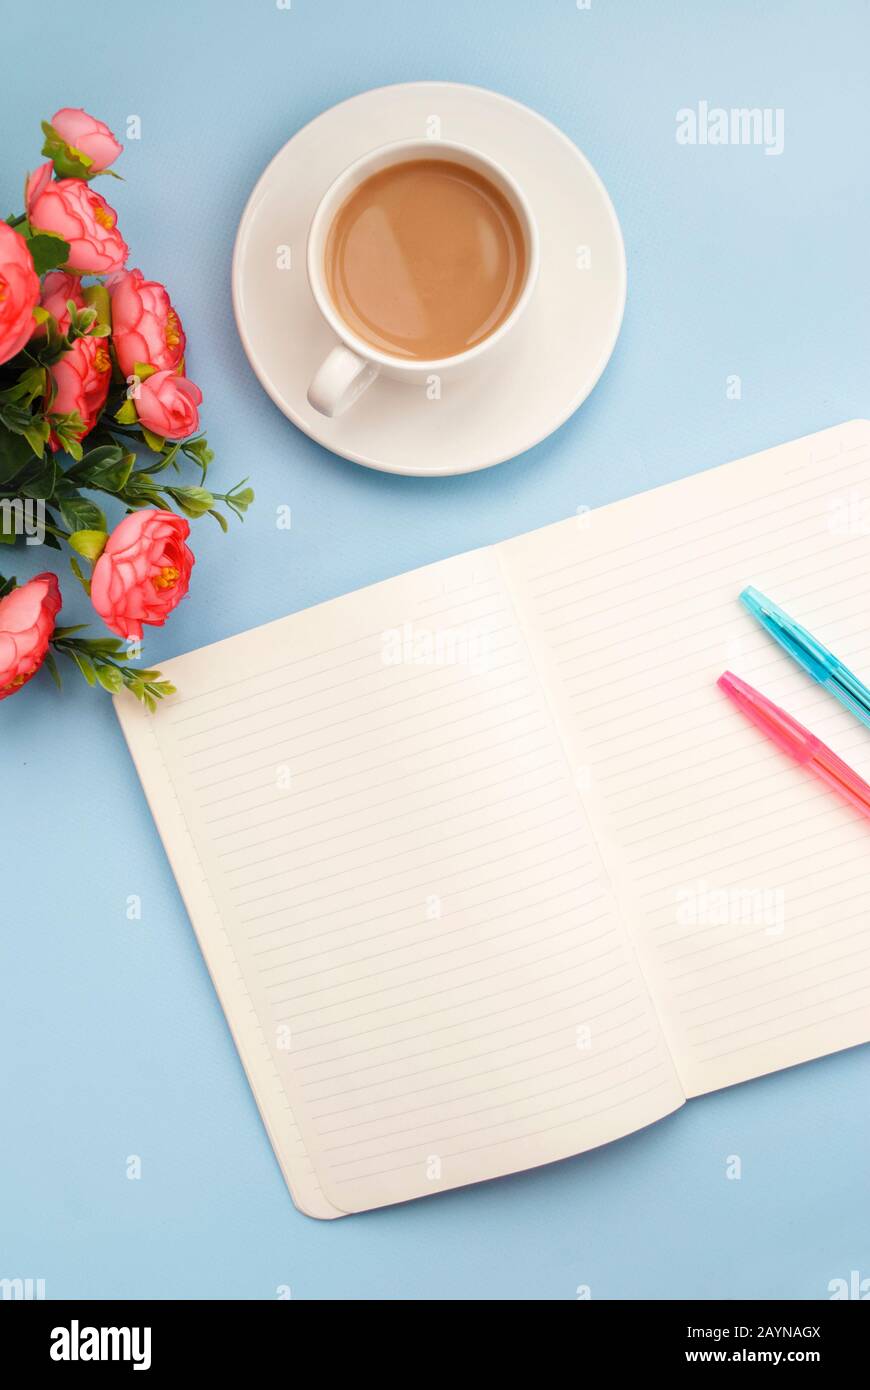 Konzept Arbeitsplatz. Weiße Tasse Kaffee mit Milch, weißes, offenes Notizbuch für Notizen, Kugelschreiber, pinke Blume auf blauem Hintergrund, Platz für Text, Kopie Stockfoto